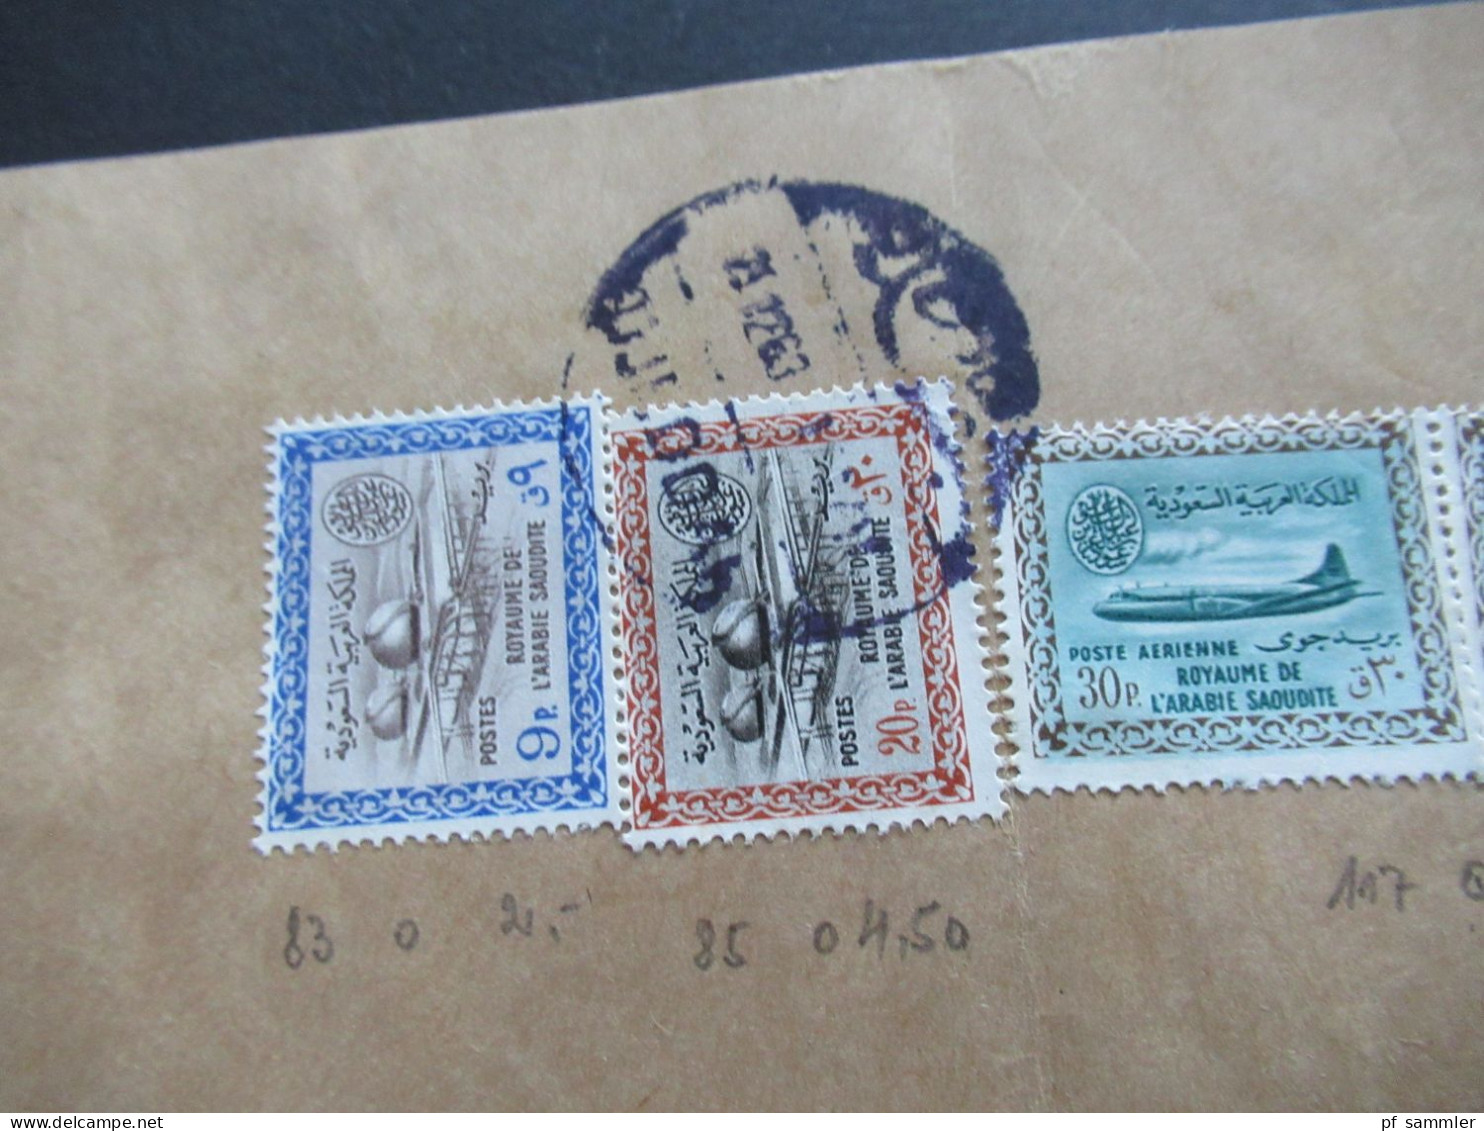 Asien Saudi Arabia um 1963 2x Firmenumschläge Juffali Bros. Air Mail / Luftpost insg. 3 Belege und 1 Briefstück!!